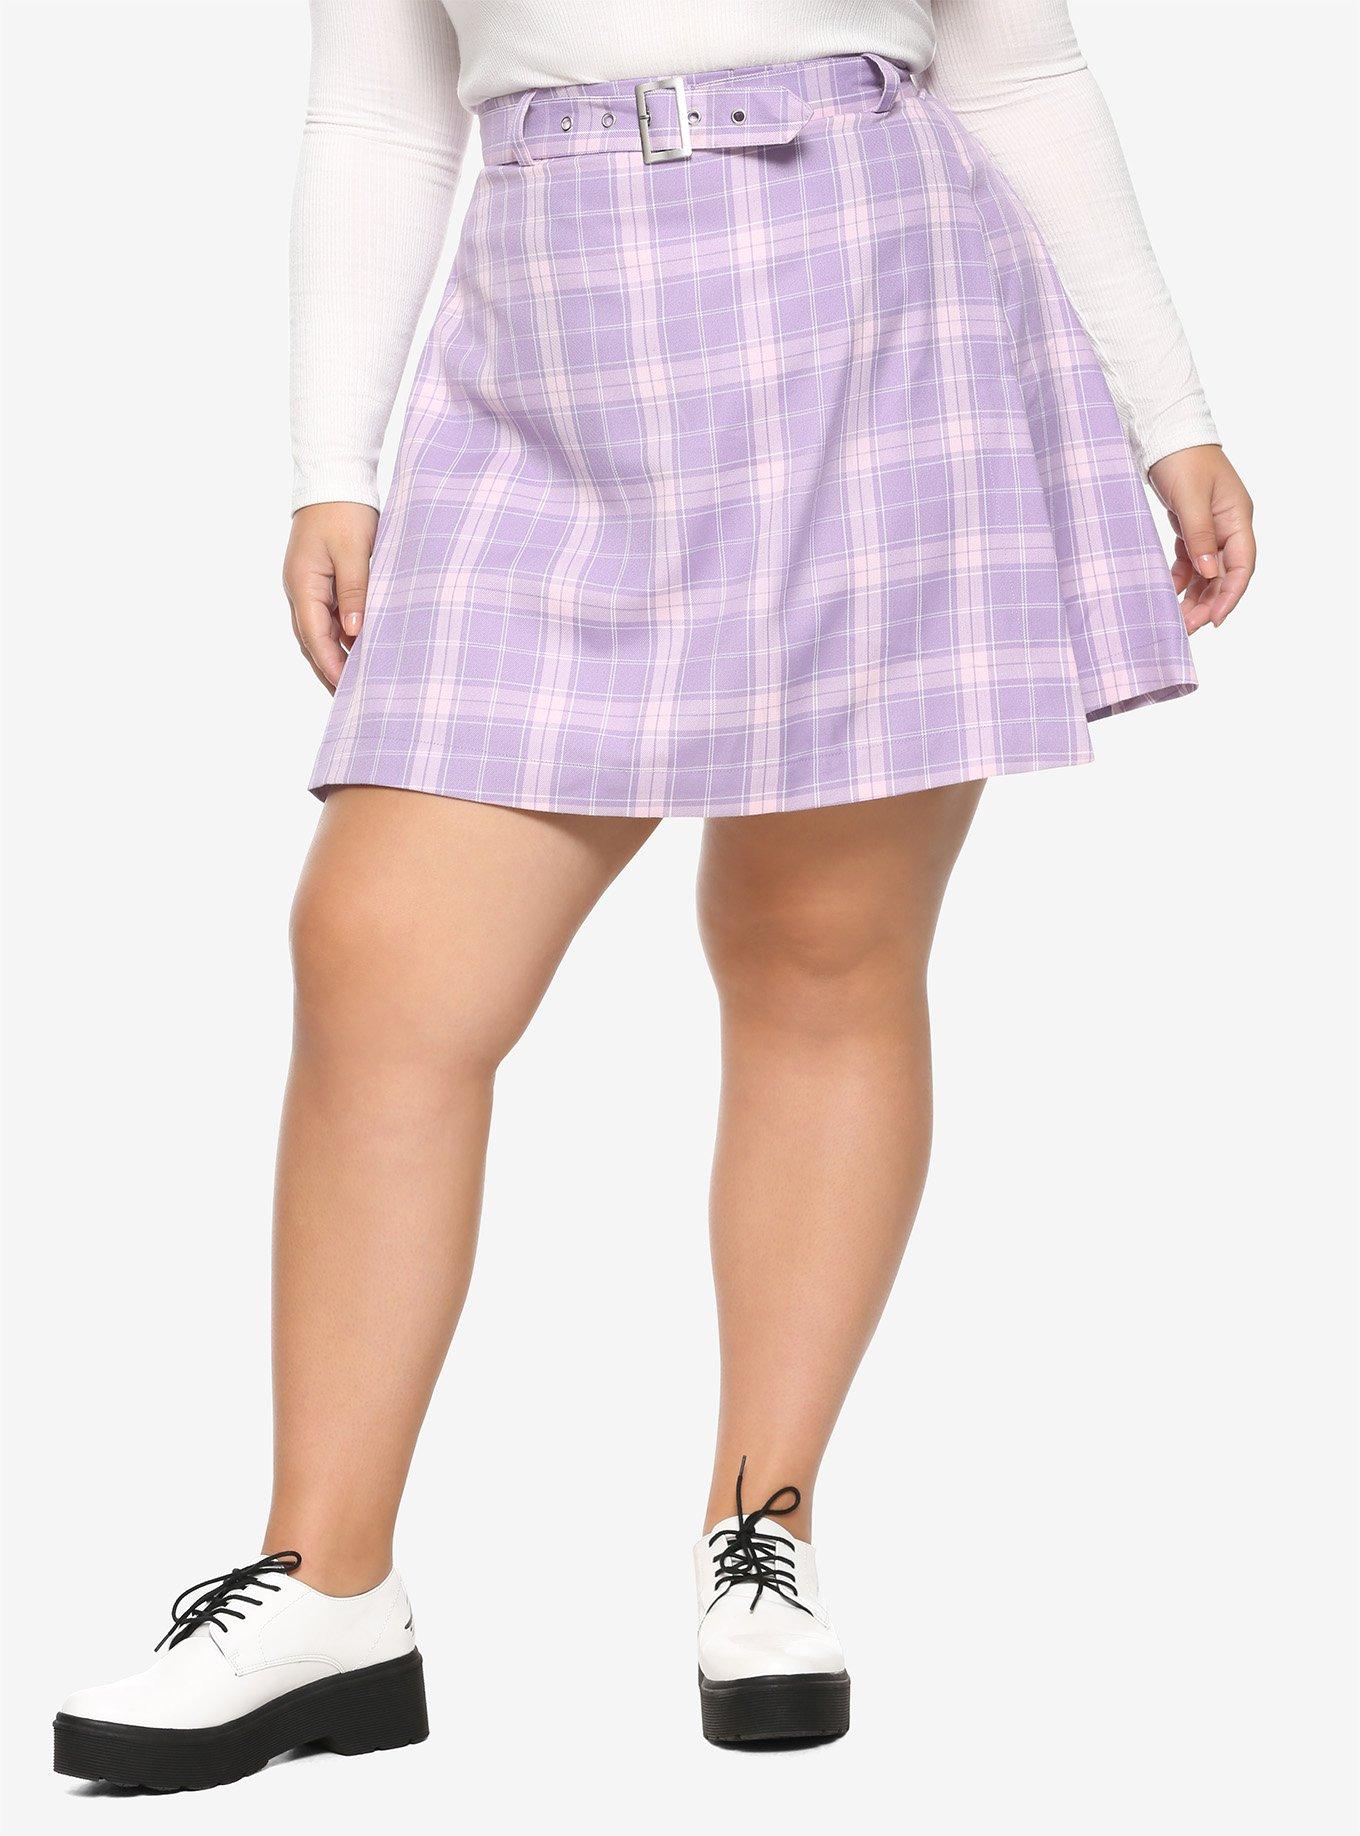 Pastel Purple Pleated & Belted Skirt Plus Size, PLAID - PURPLE, hi-res